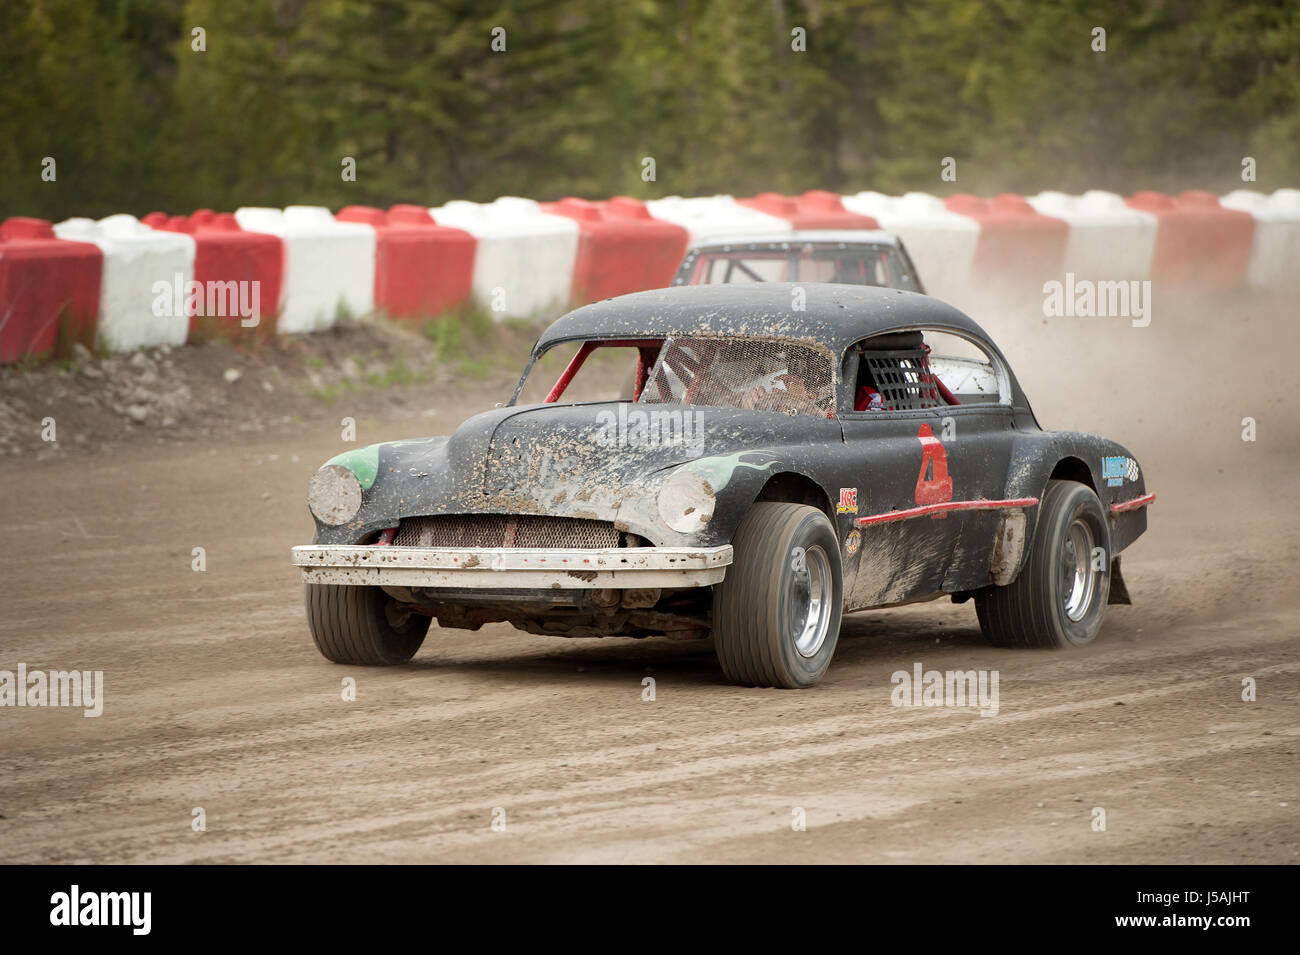 Kleine Stadt Dirt-Track Stock-Car-Rennen.  Hausgemachte Rennwagen auf einem Feldweg.  Pemberton BC, Kanada Stockfoto